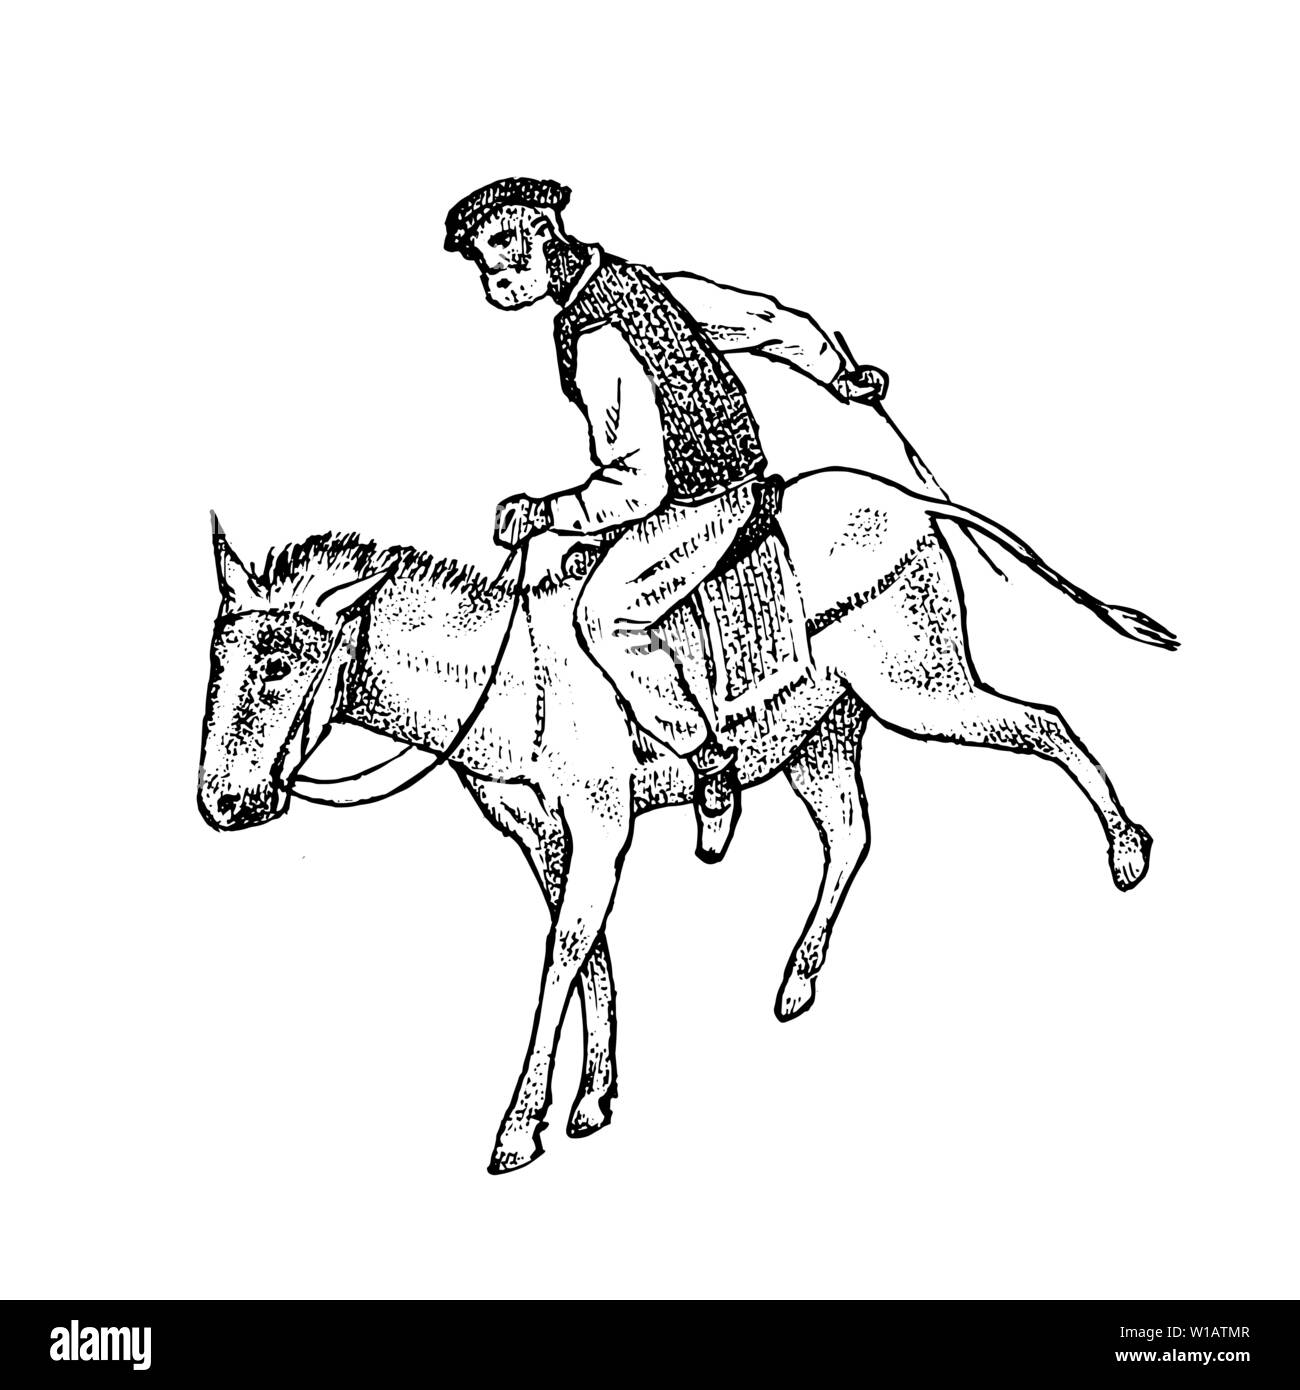 Man Mitfahrer in Nationale Kleidung. Griechische auf Pferd oder Esel. Symbol der griechischen Antike. Hand graviert vintage Skizze für Poster, Banner oder auf der Website. Stock Vektor